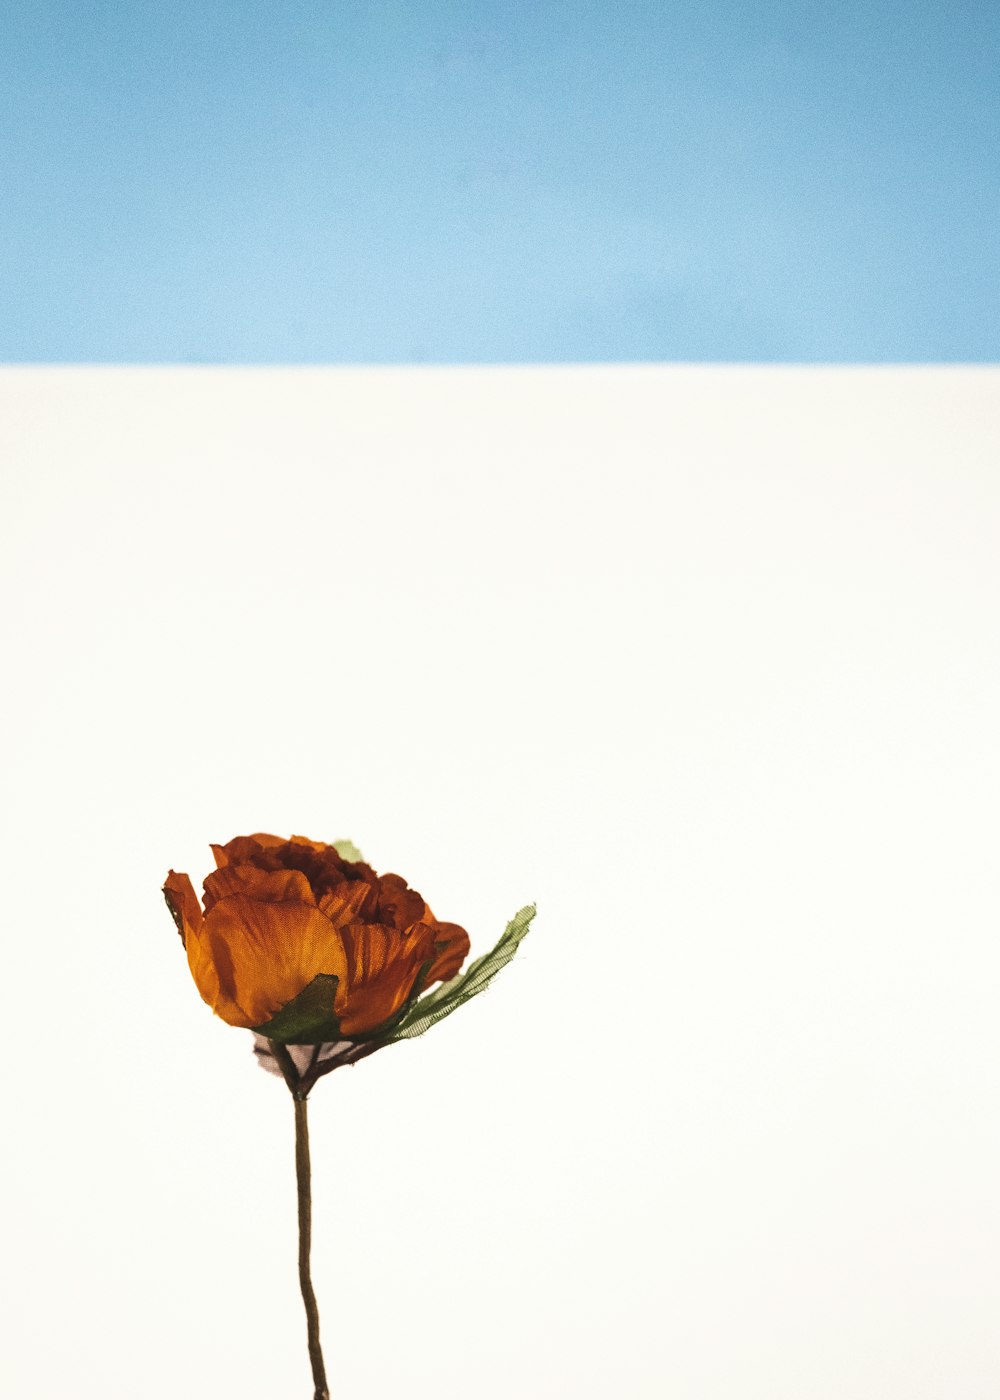 orange flower on white background